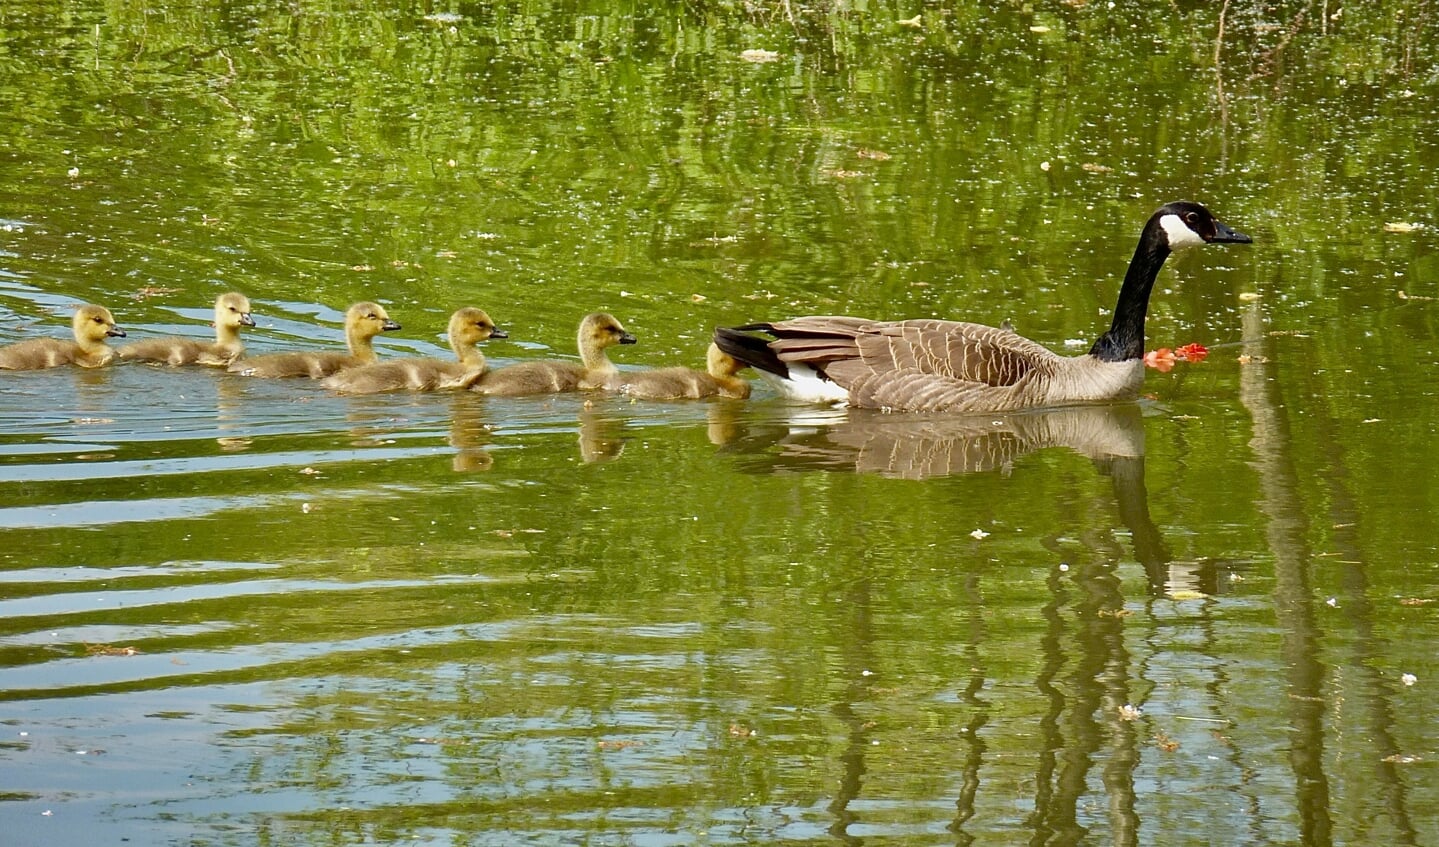 Alle kuikens zwemmen keurig achter de grote vogel aan. Zou dat de vader of de moeder zijn? 